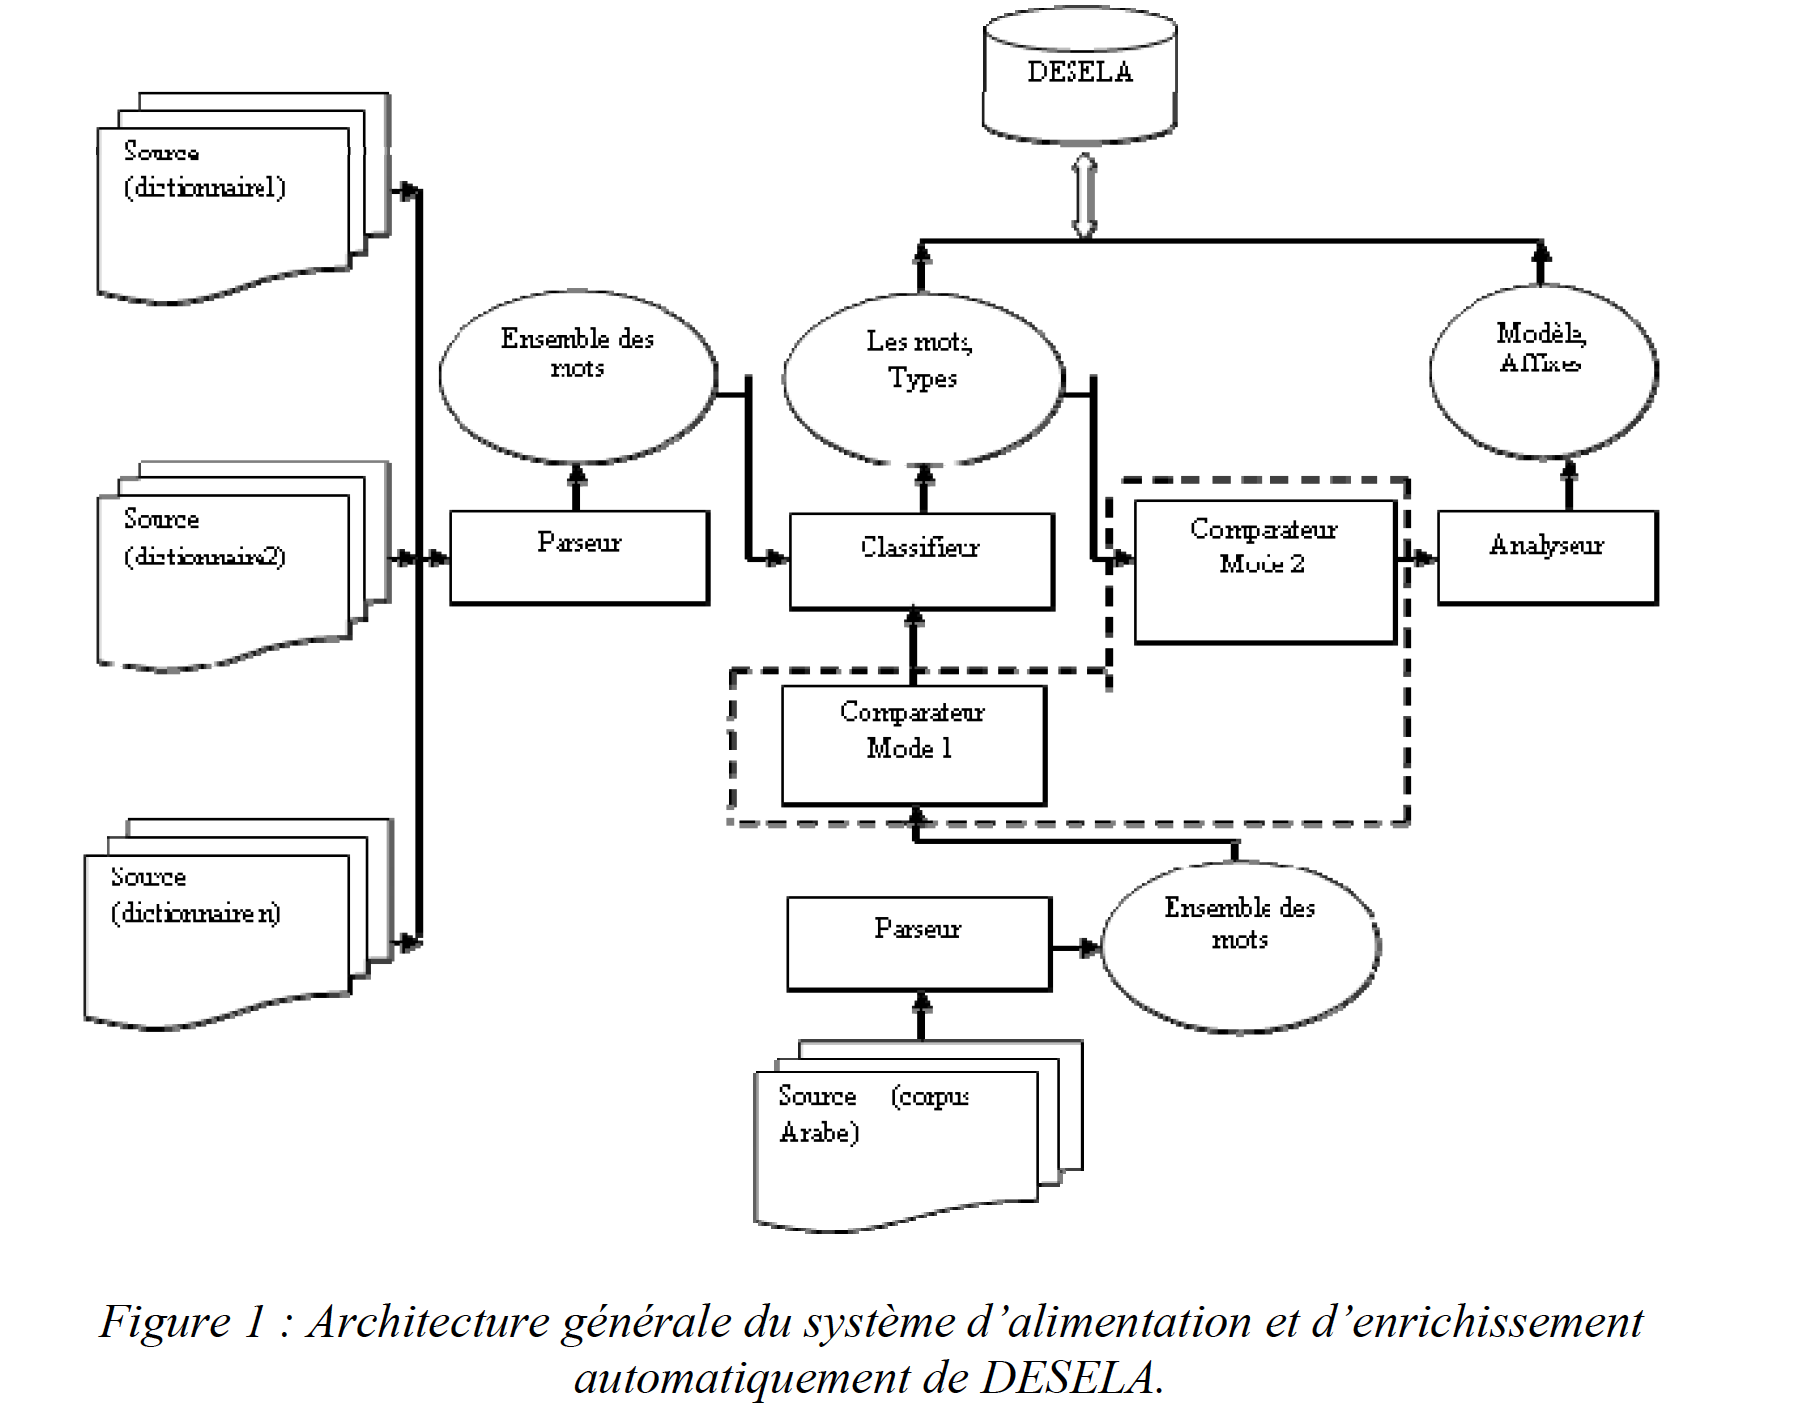 Figure 1 Architecture générale du système d’alimentation et d’enrichissement automatiquement de DESELA..png